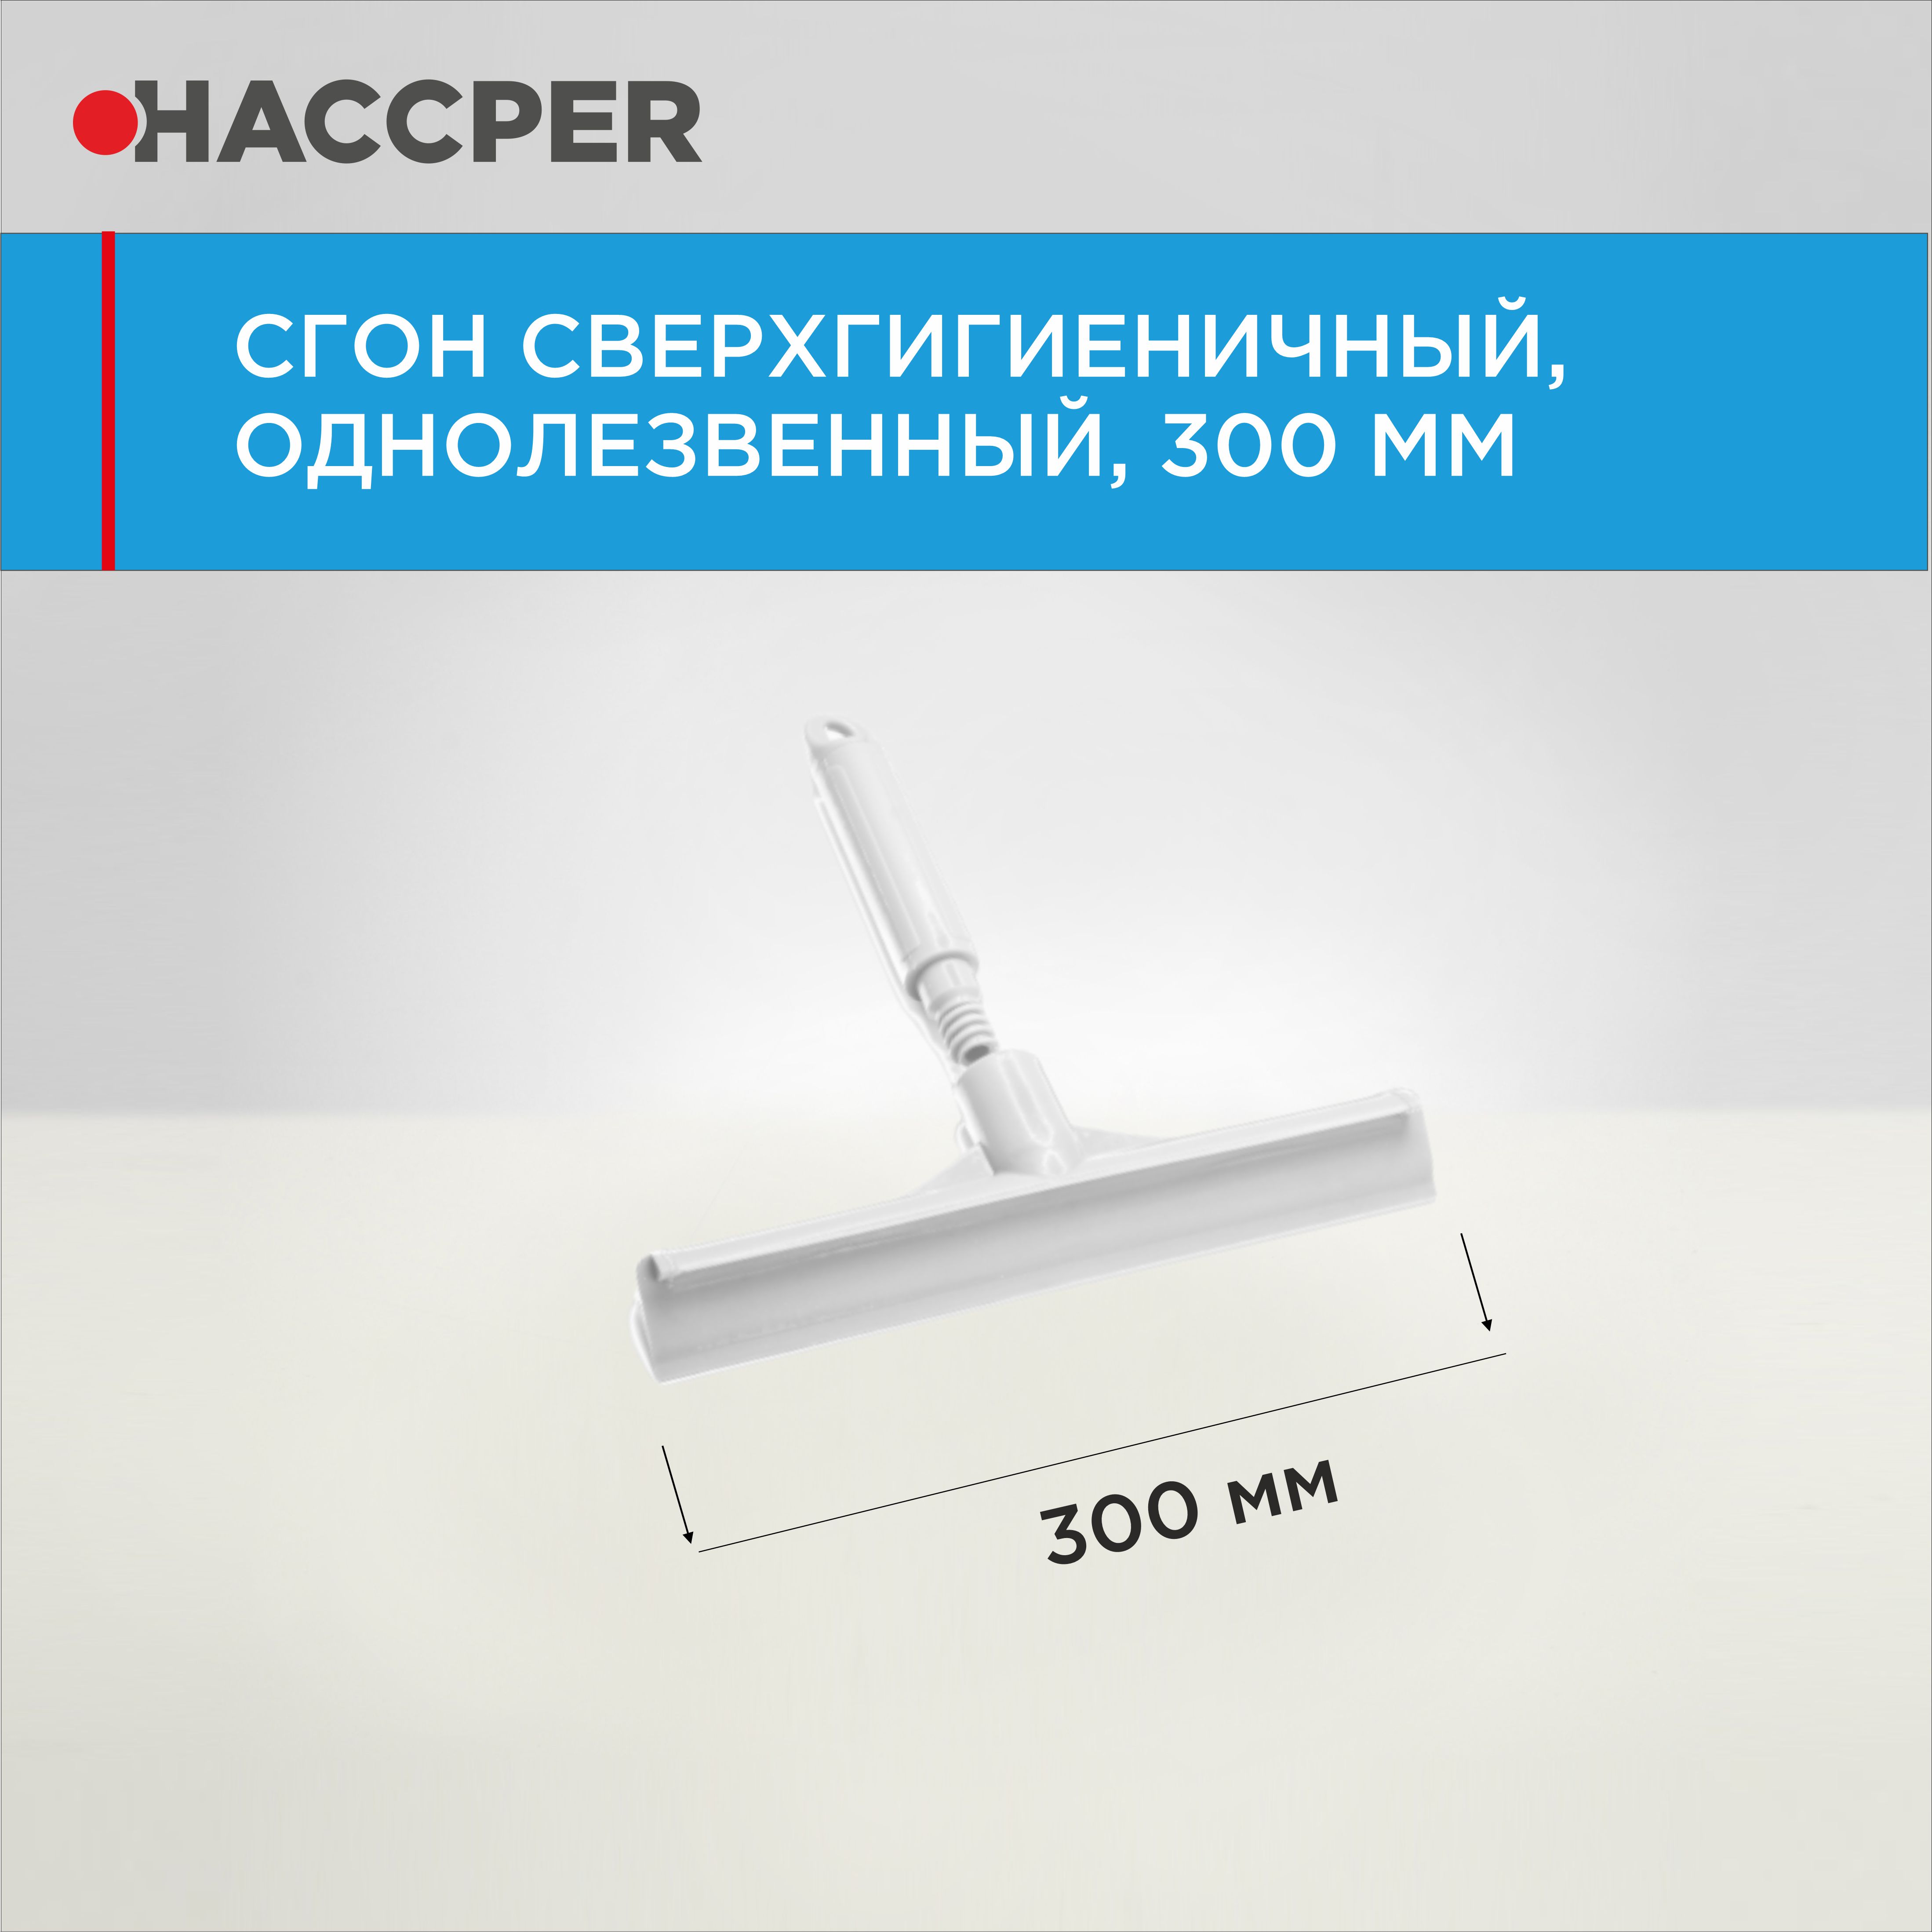 Сгон HACCPER сверхгигиеничный ручной однолезвенный с мини-рукояткой, 300 мм, белый